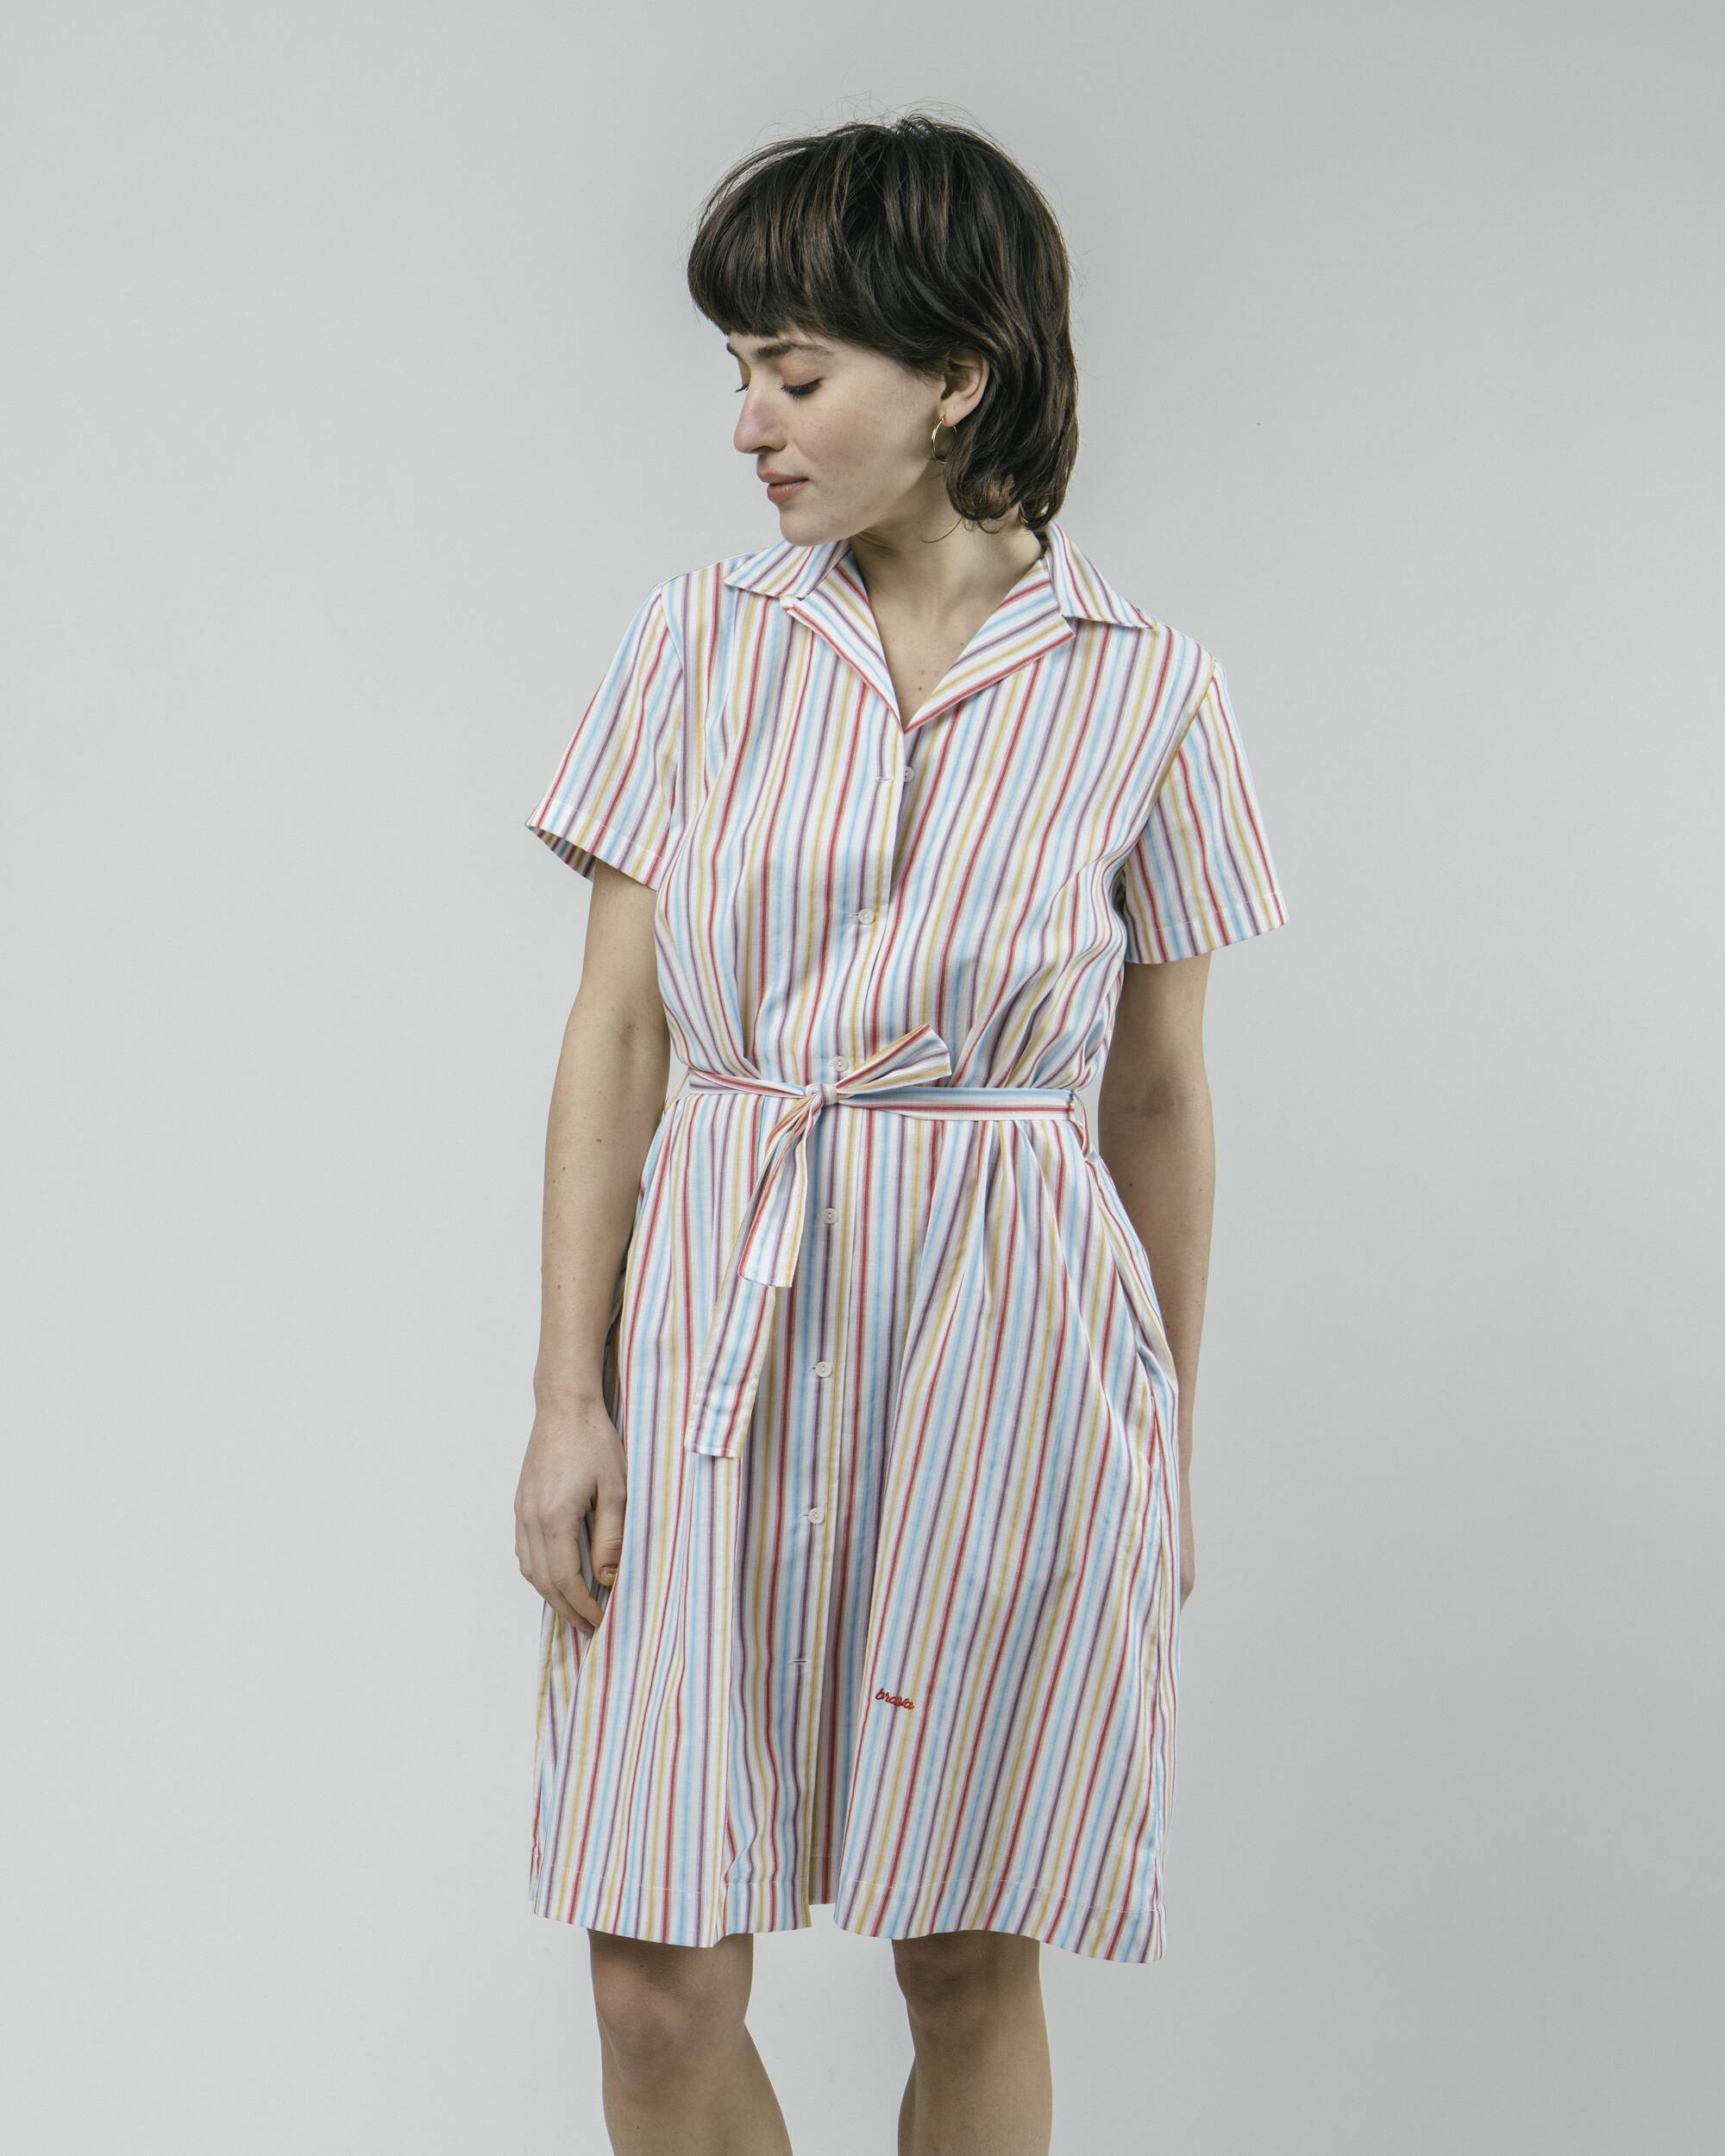 Kleid "Downtown Stripes" aus 100% Bio - Baumwolle von Brava Fabrics